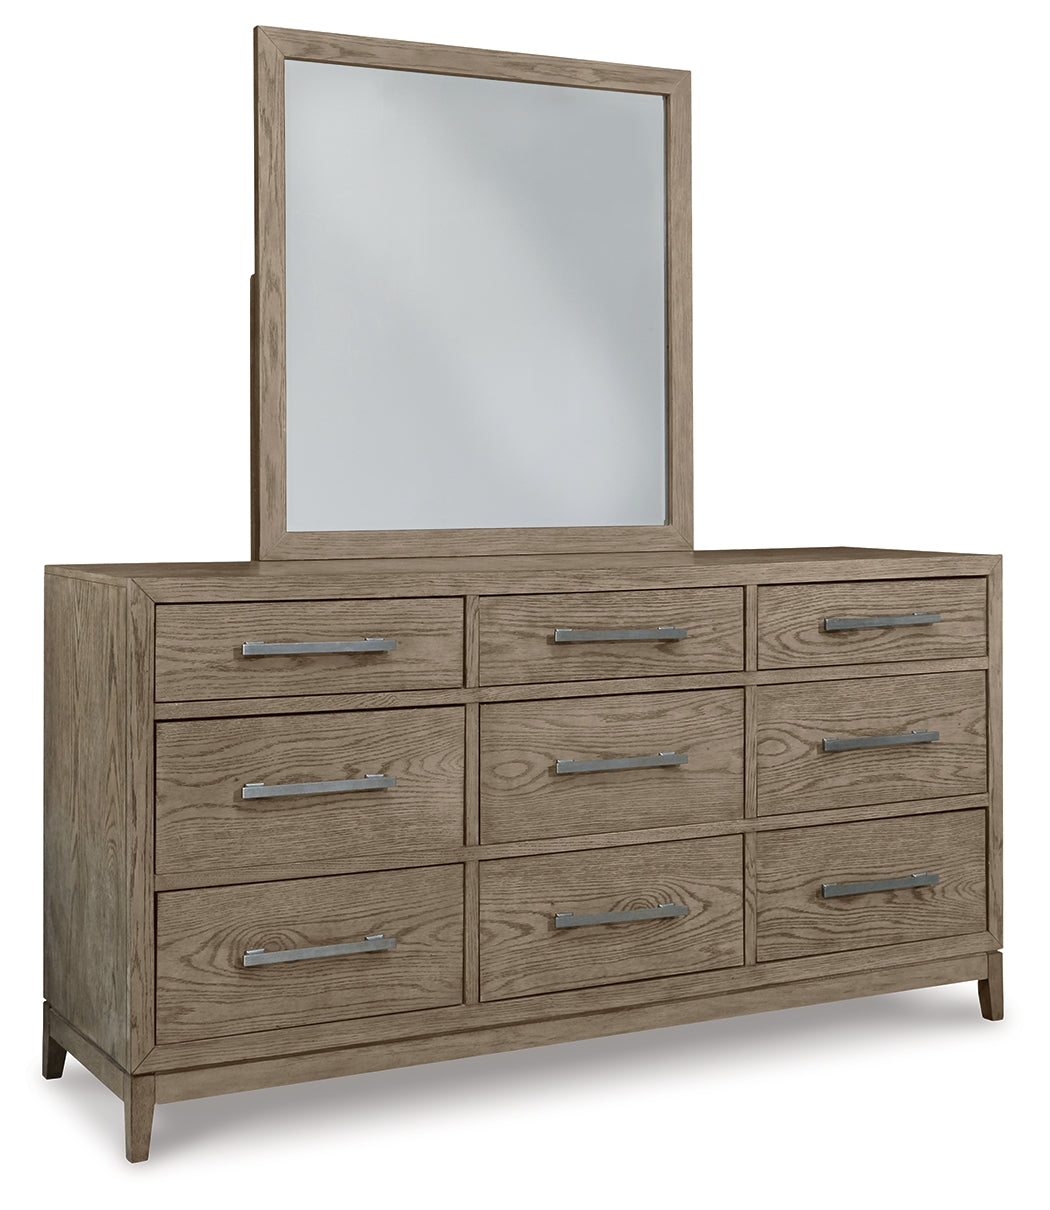 Chrestner Queen Panel Bedroom Set with Dresser and Mirror